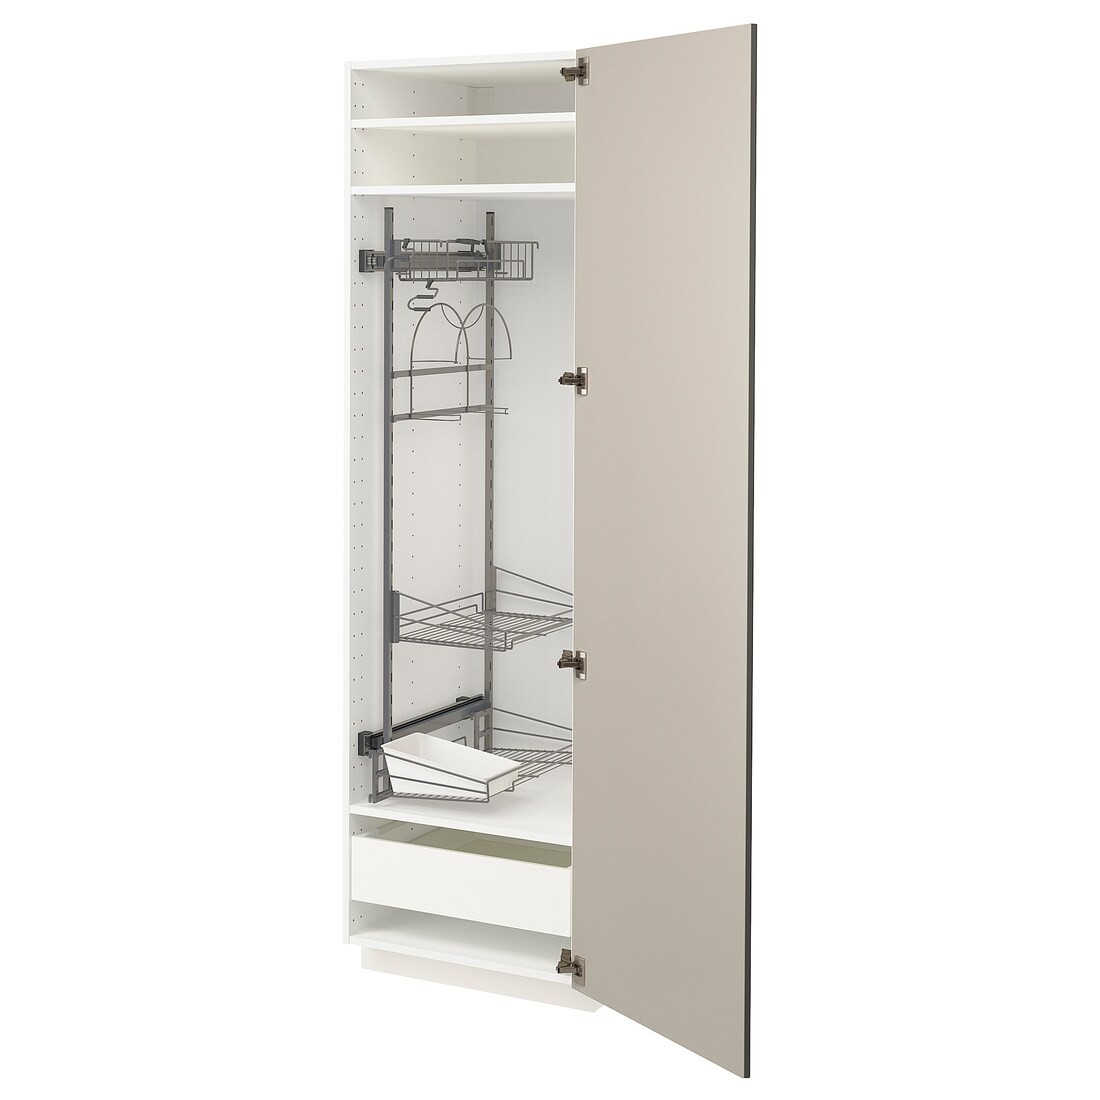 METOD МЕТОД / MAXIMERA МАКСИМЕРА Высокий шкаф с отделением для аксессуаров для уборки, белый / Stensund бежевый, 60x60x200 см